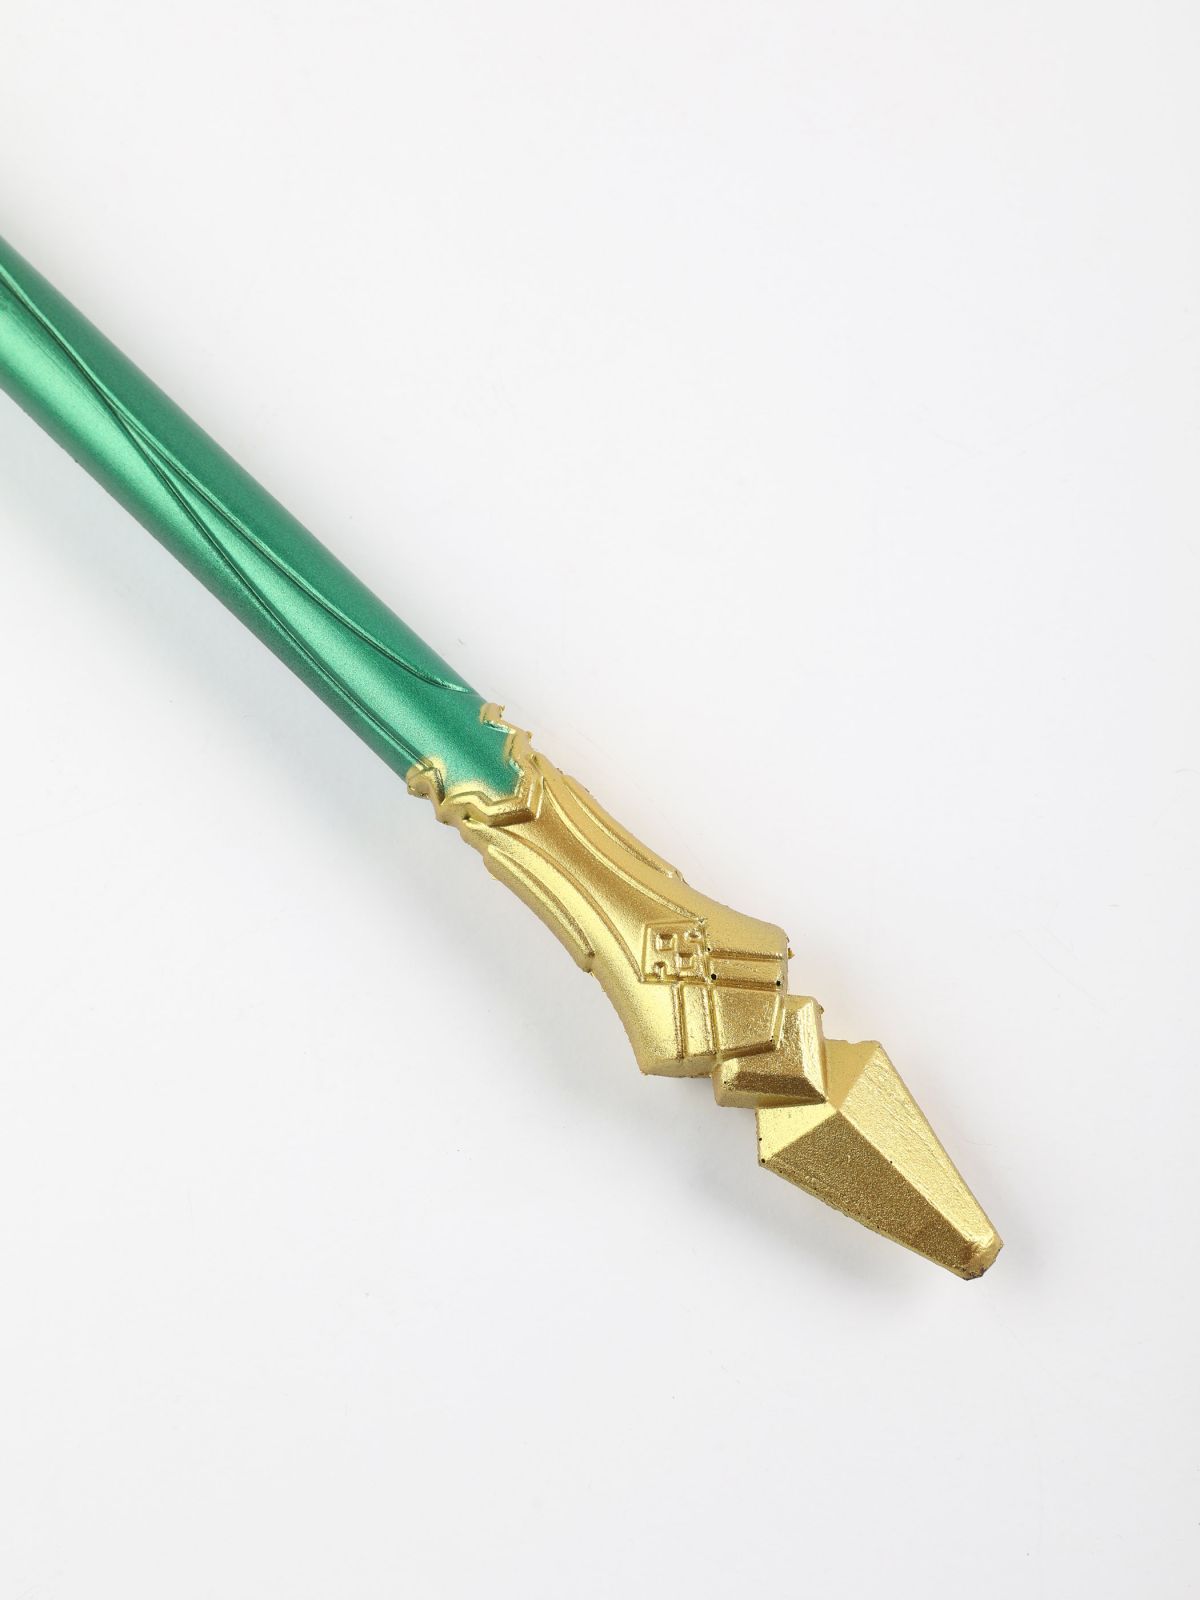  חרב חנית לתחפושת / Purim Collection של SHOSHI ZOHAR